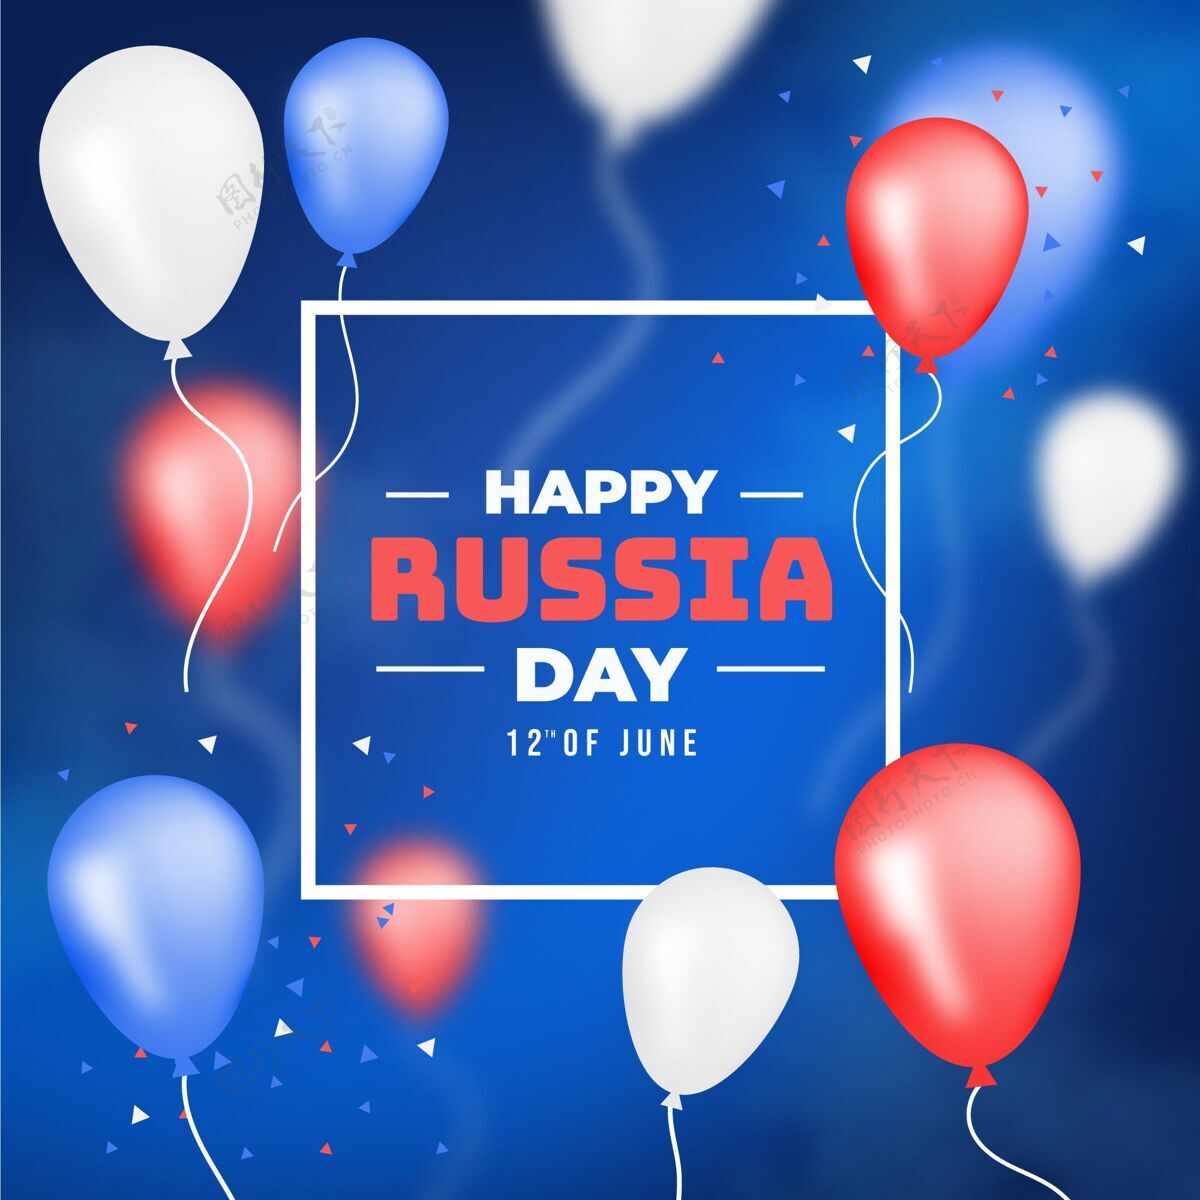 壁纸真实的俄罗斯日背景与气球俄罗斯日背景气球壁纸俄罗斯